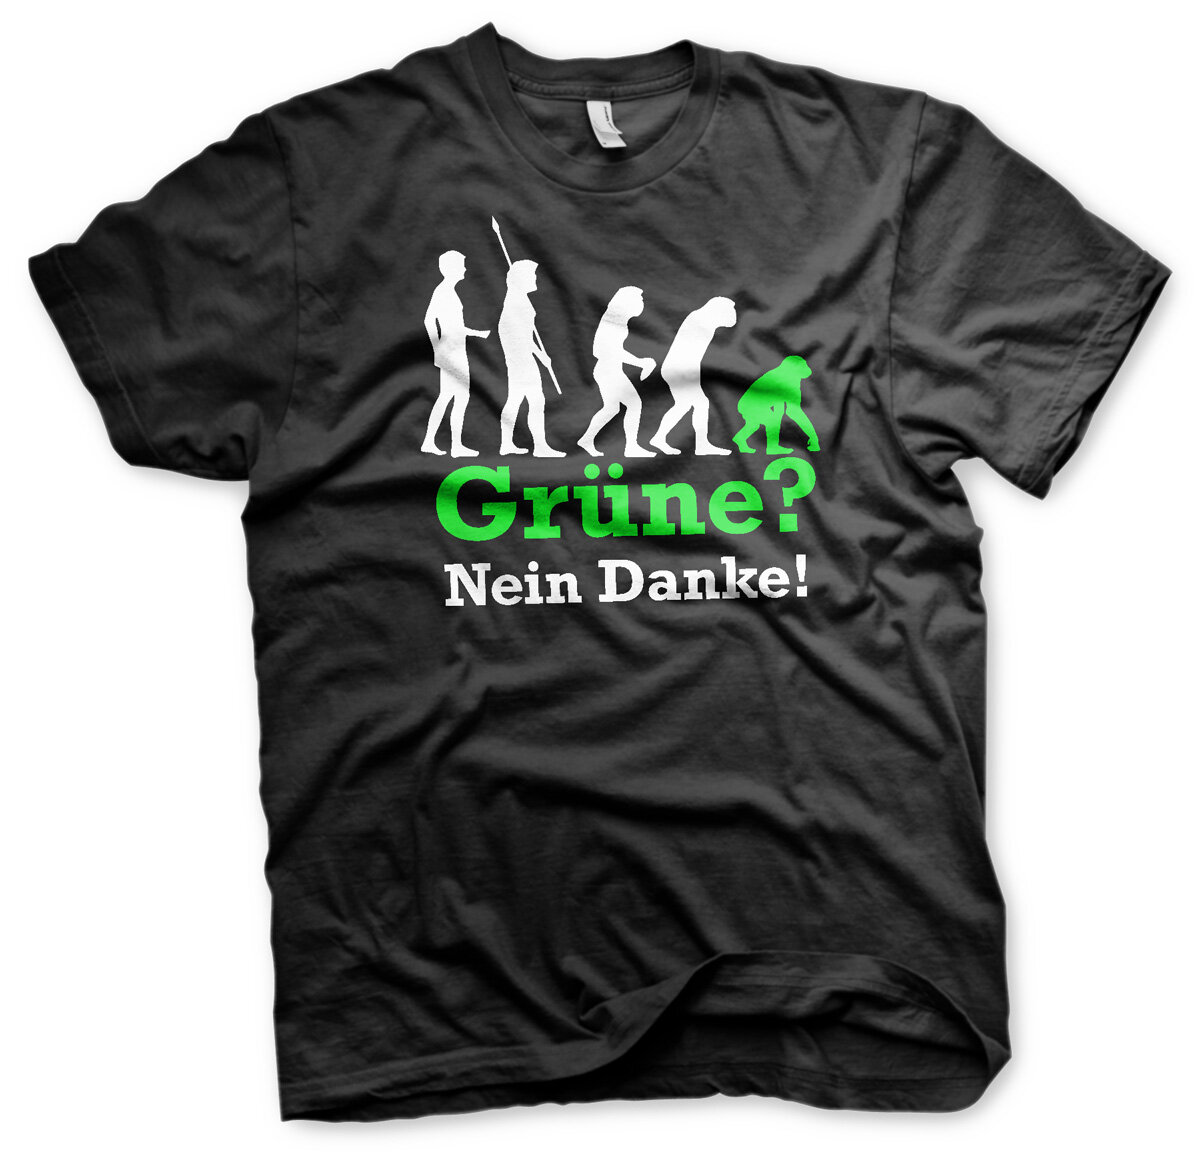 Grüne Nein Danke Herren Tshirt - Wikingerversand, 18,90 €